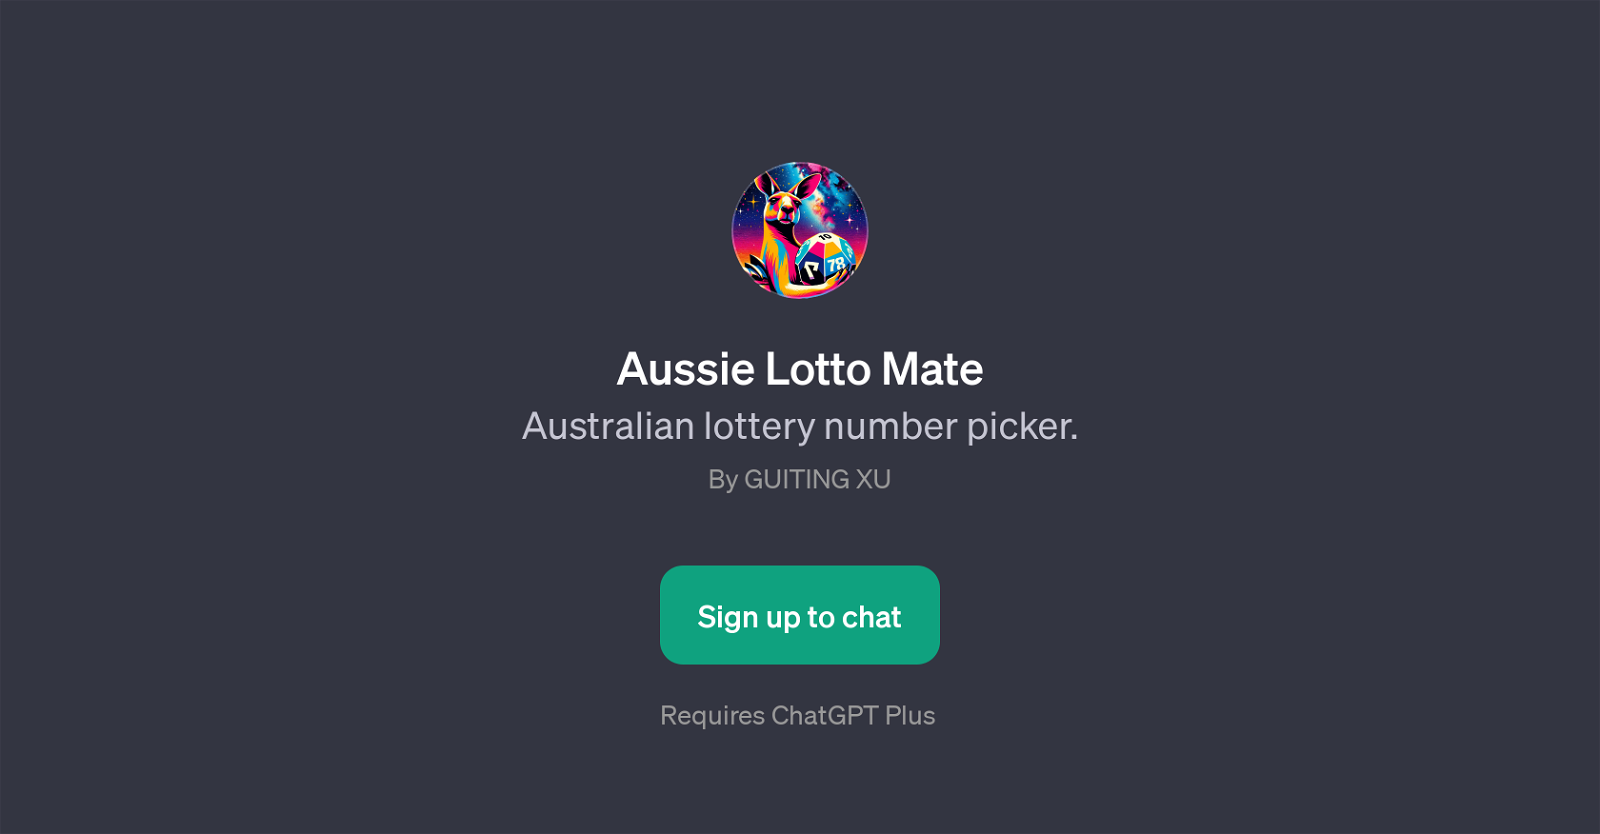 Aussie Lotto Mate website